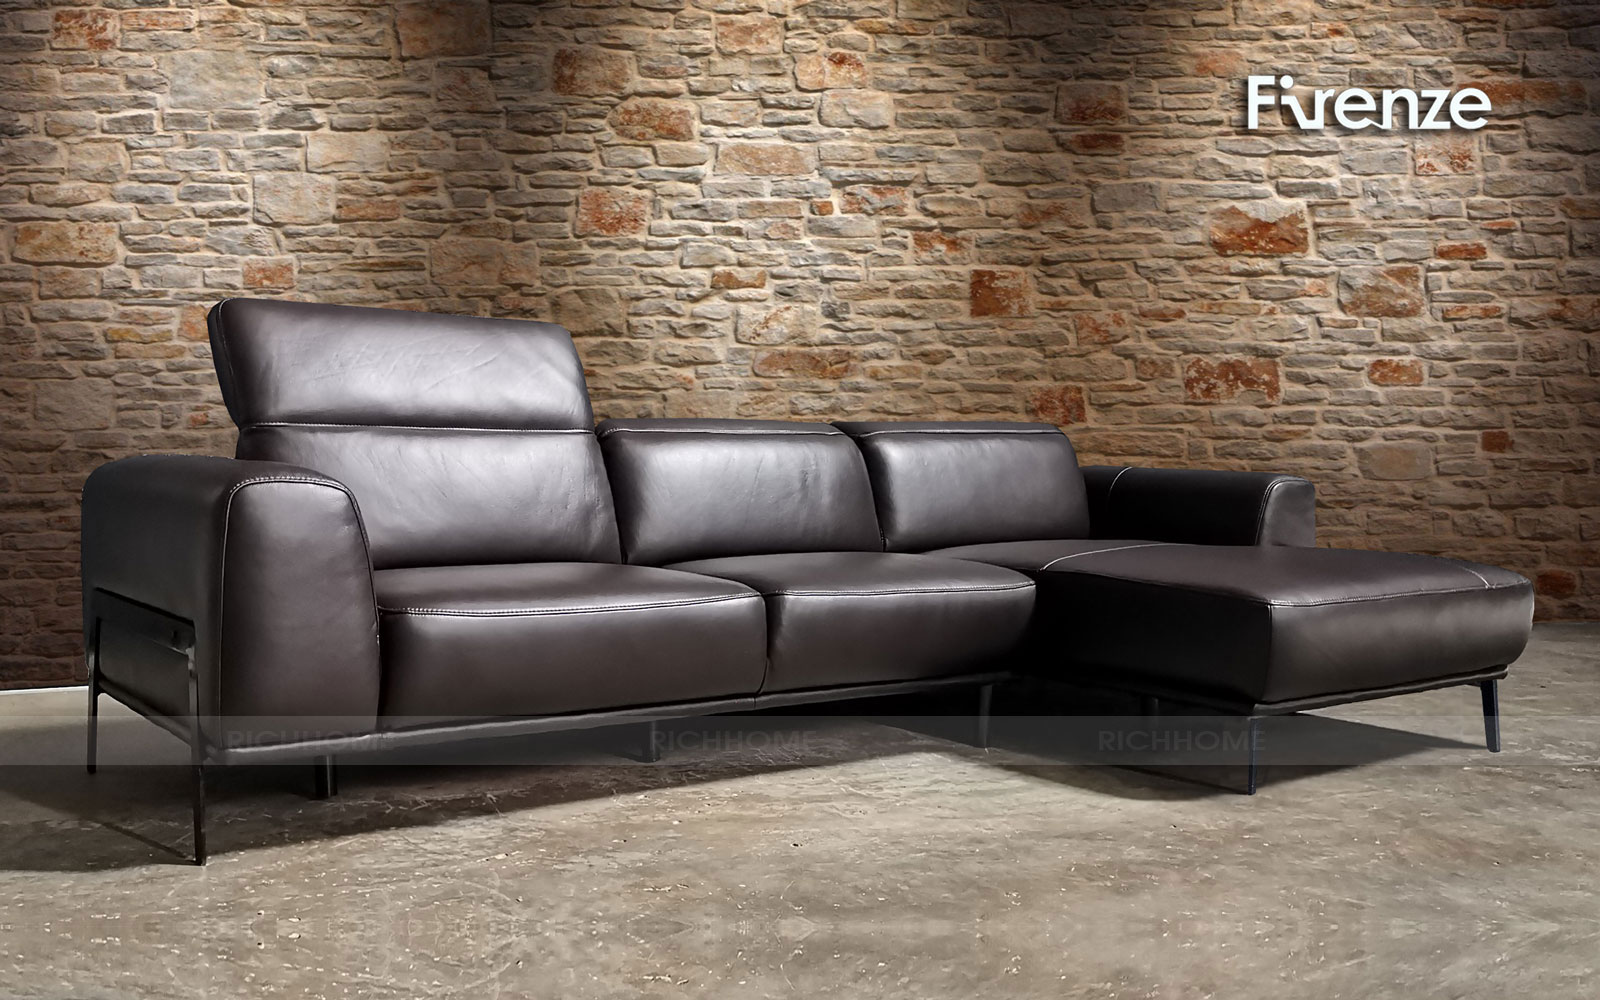 Tổng hợp các mẫu sofa nhập khẩu với nhiều kiểu dáng khác nhau - Ảnh 11